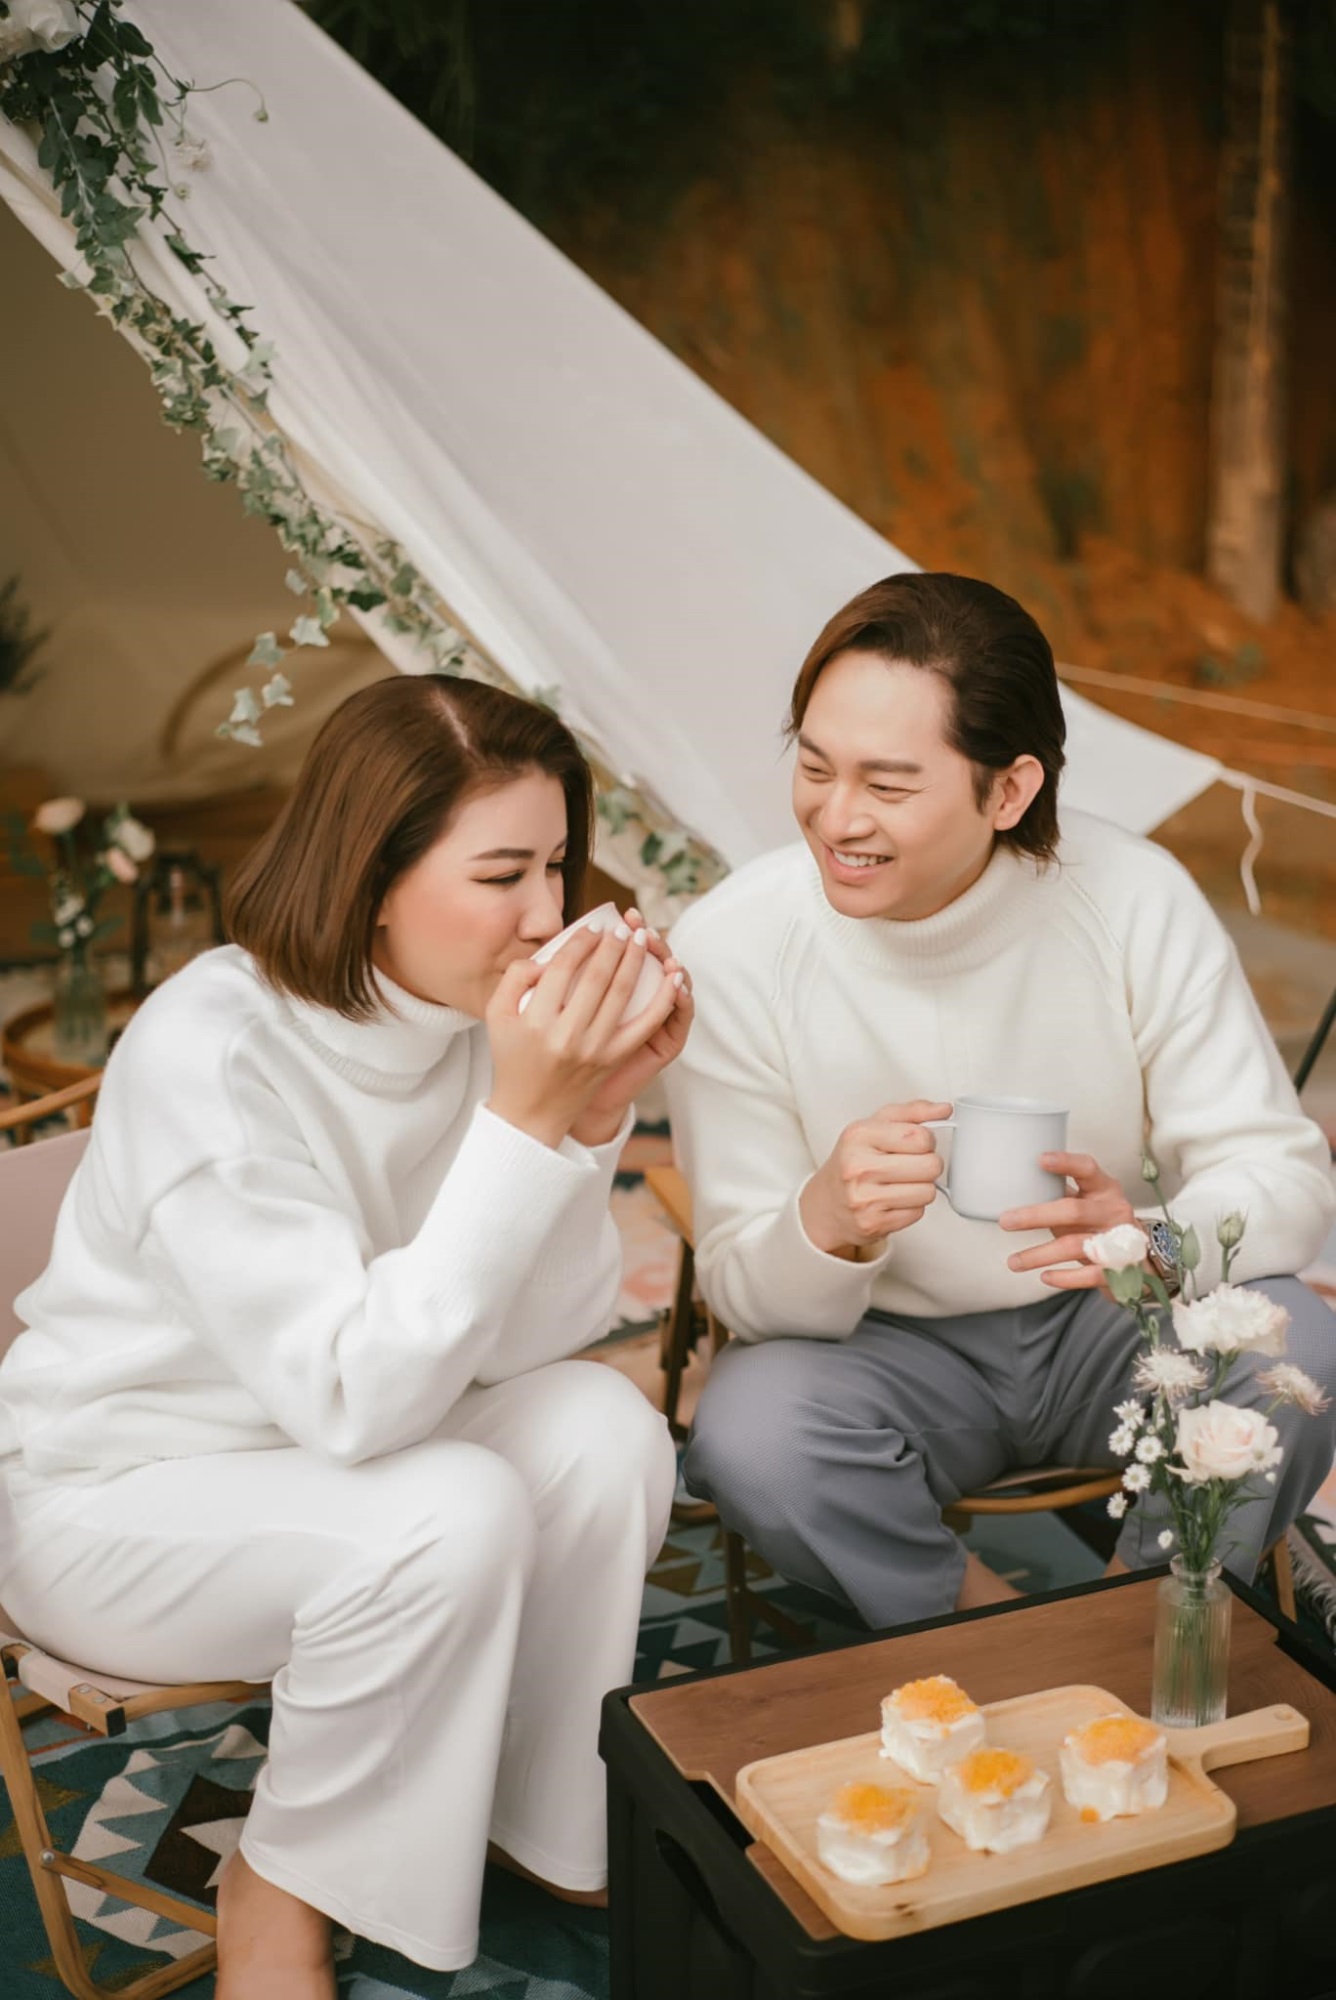 Sau màn cãi nhau khi vừa kết thúc hôn lễ, Trang Trần khoe ảnh 'khóa môi' cực tình với ông xã Việt kiều - Ảnh 7